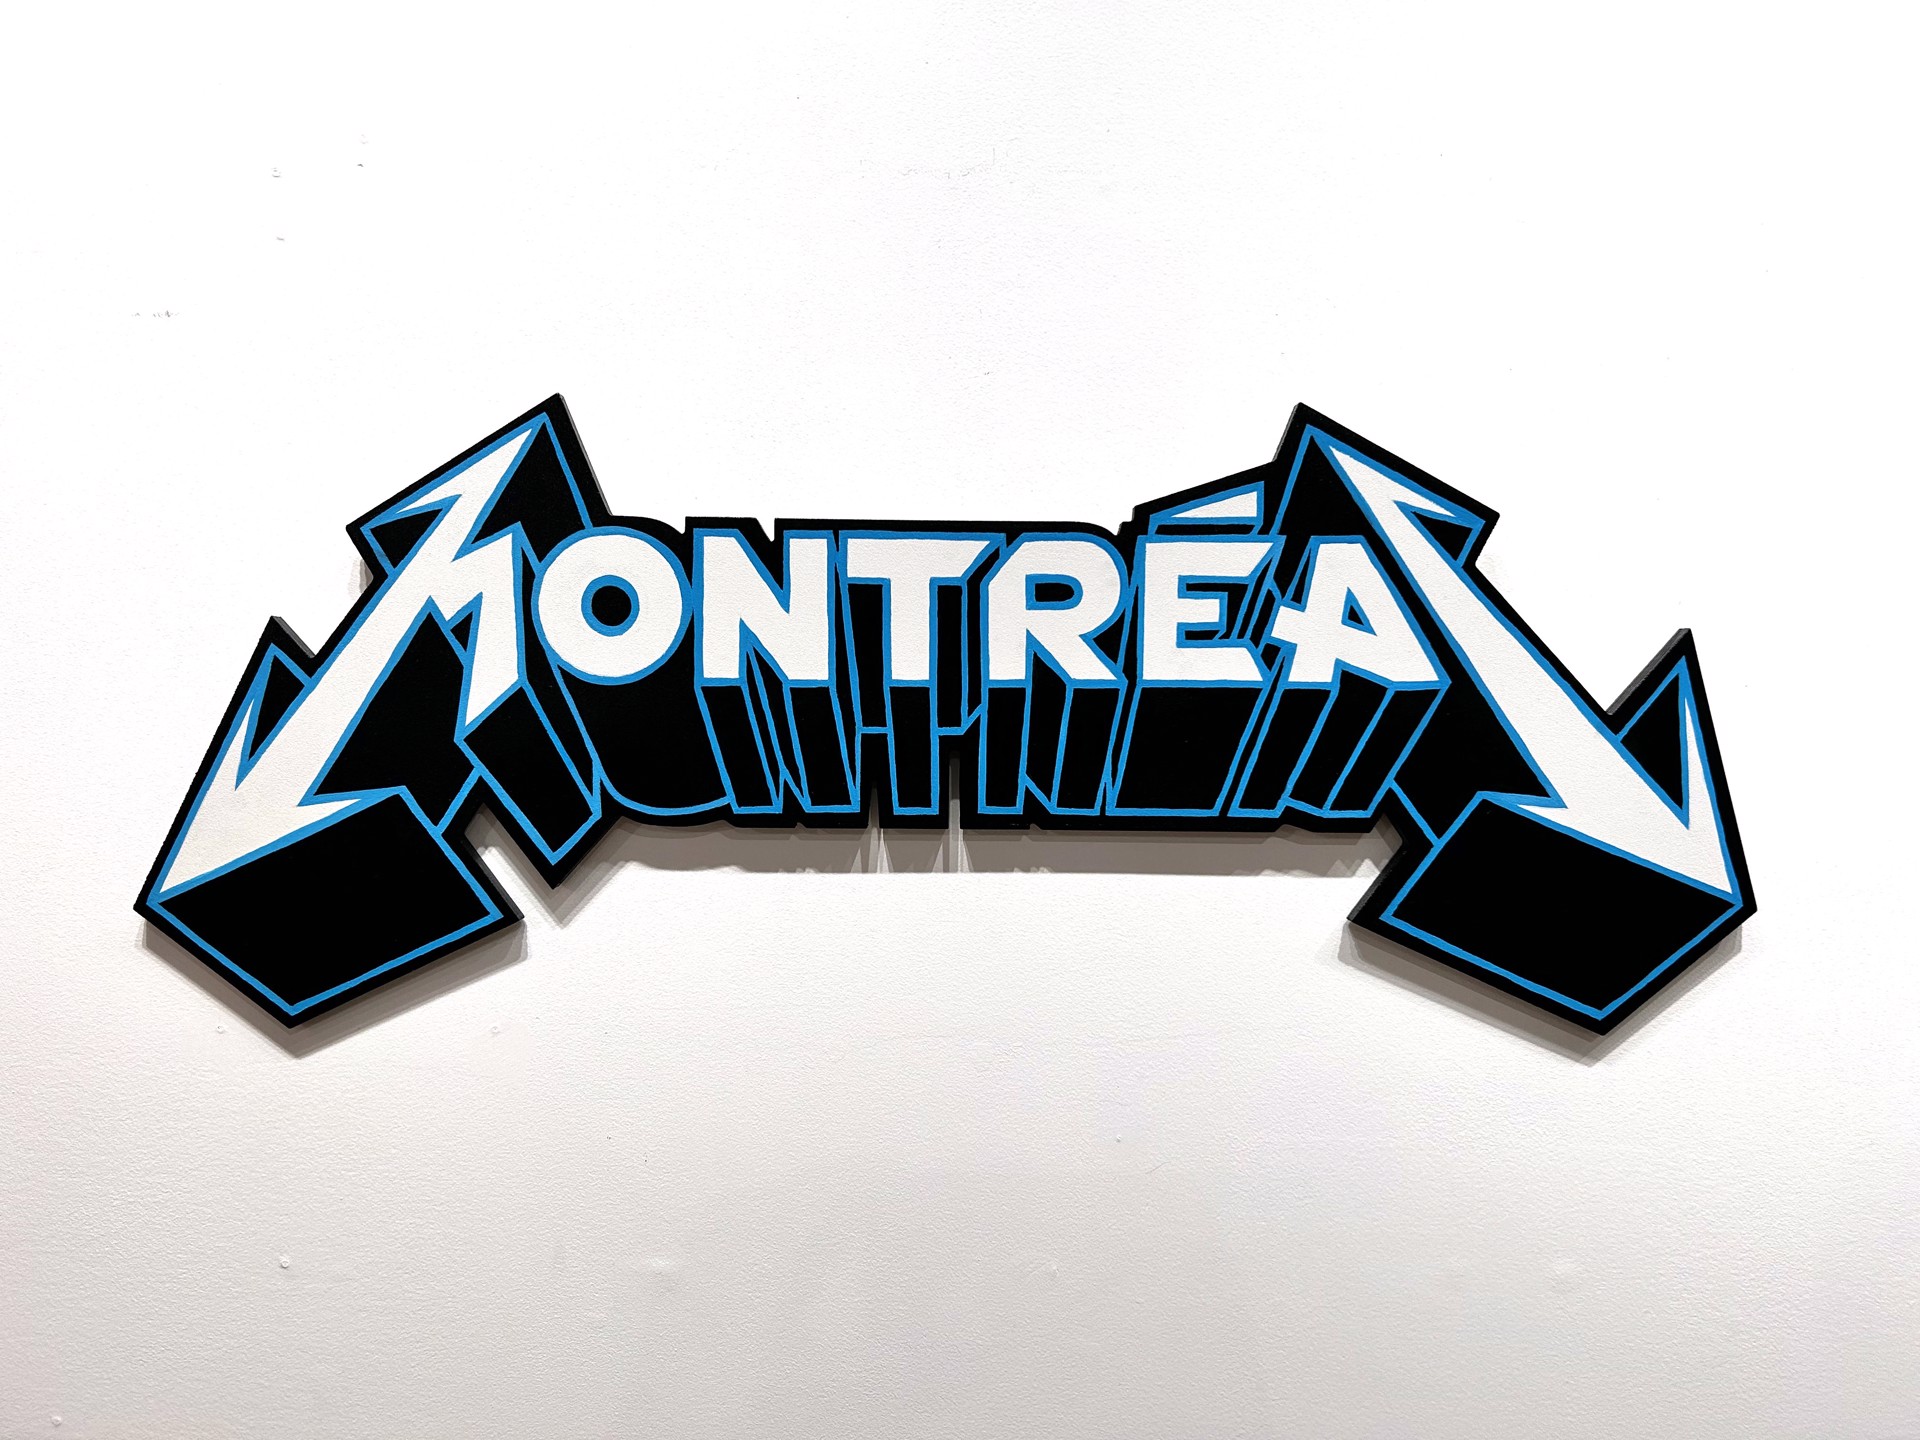 Montrealica by Jason Wasserman